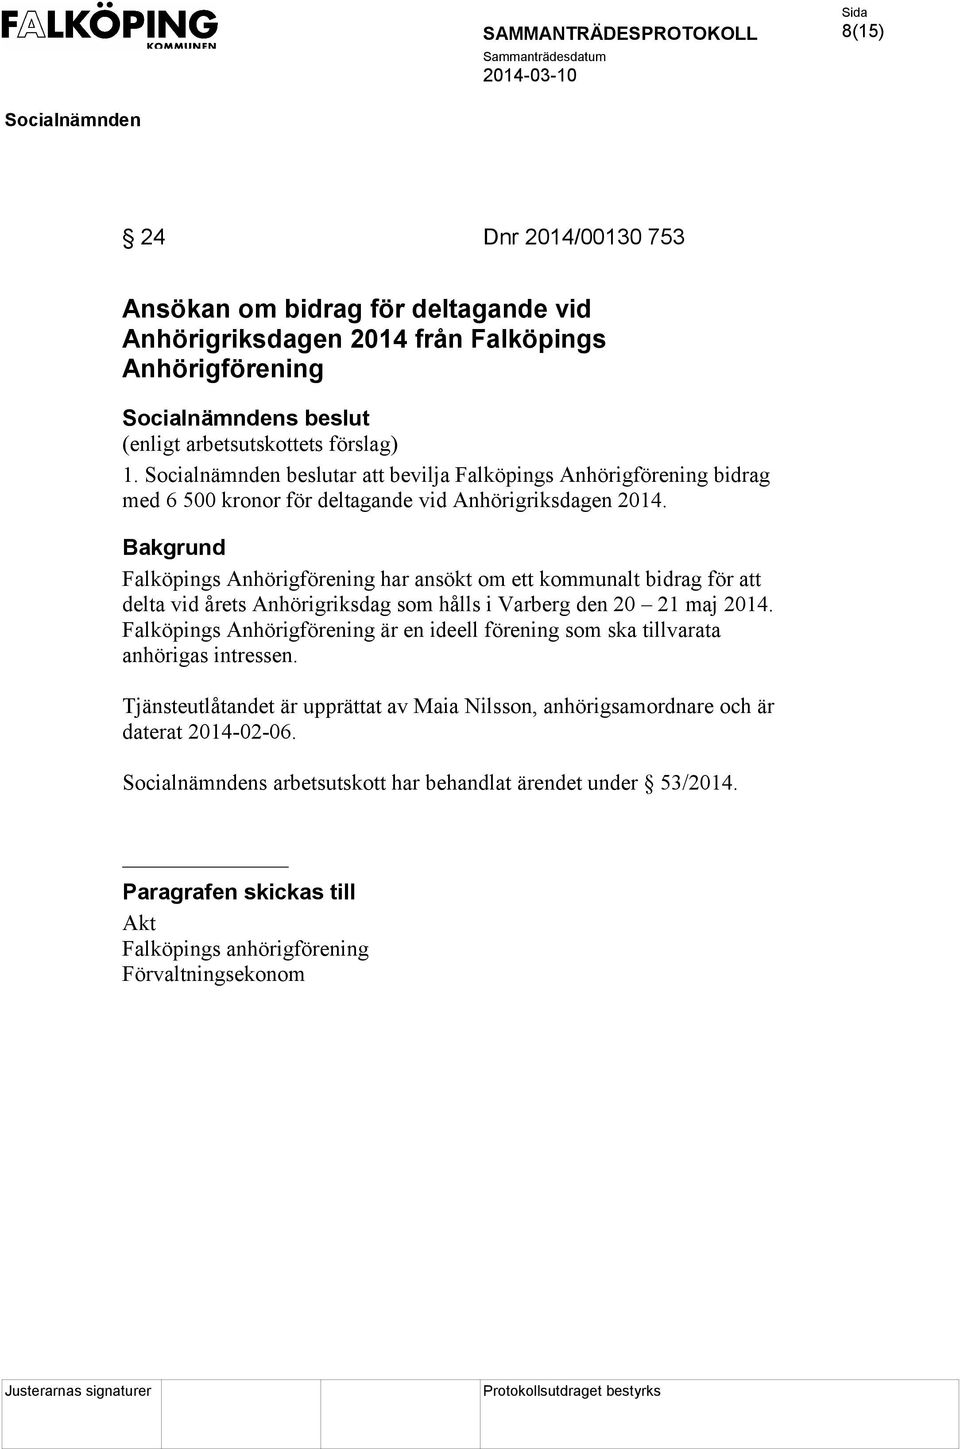 Falköpings Anhörigförening har ansökt om ett kommunalt bidrag för att delta vid årets Anhörigriksdag som hålls i Varberg den 20 21 maj 2014.